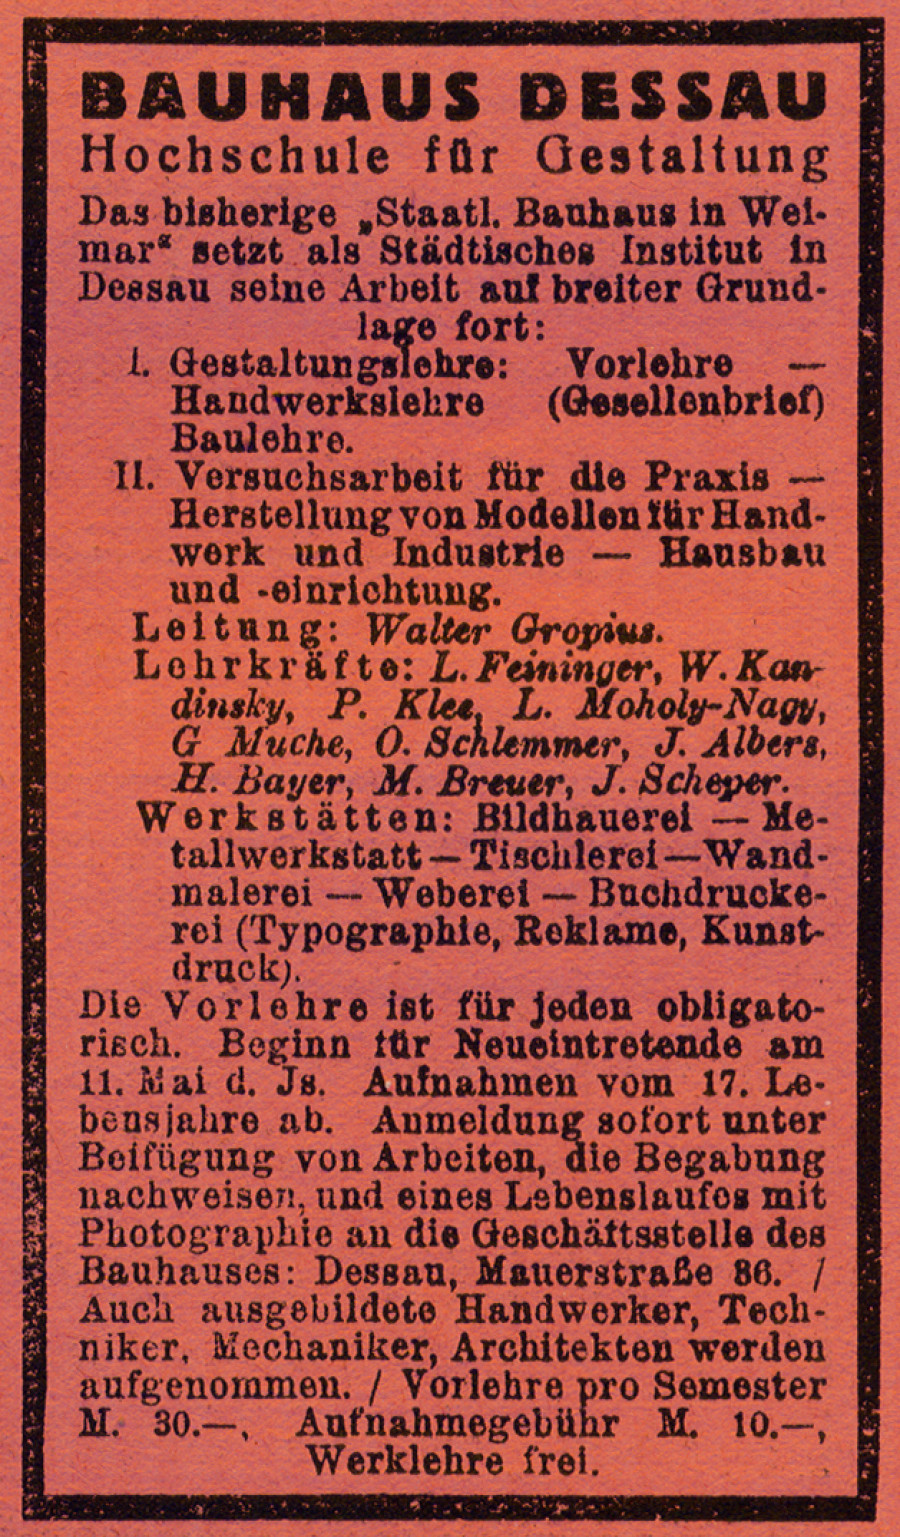 Реклама Баухауса в журнале Die Weltbühne 28 апреля 1925 г.